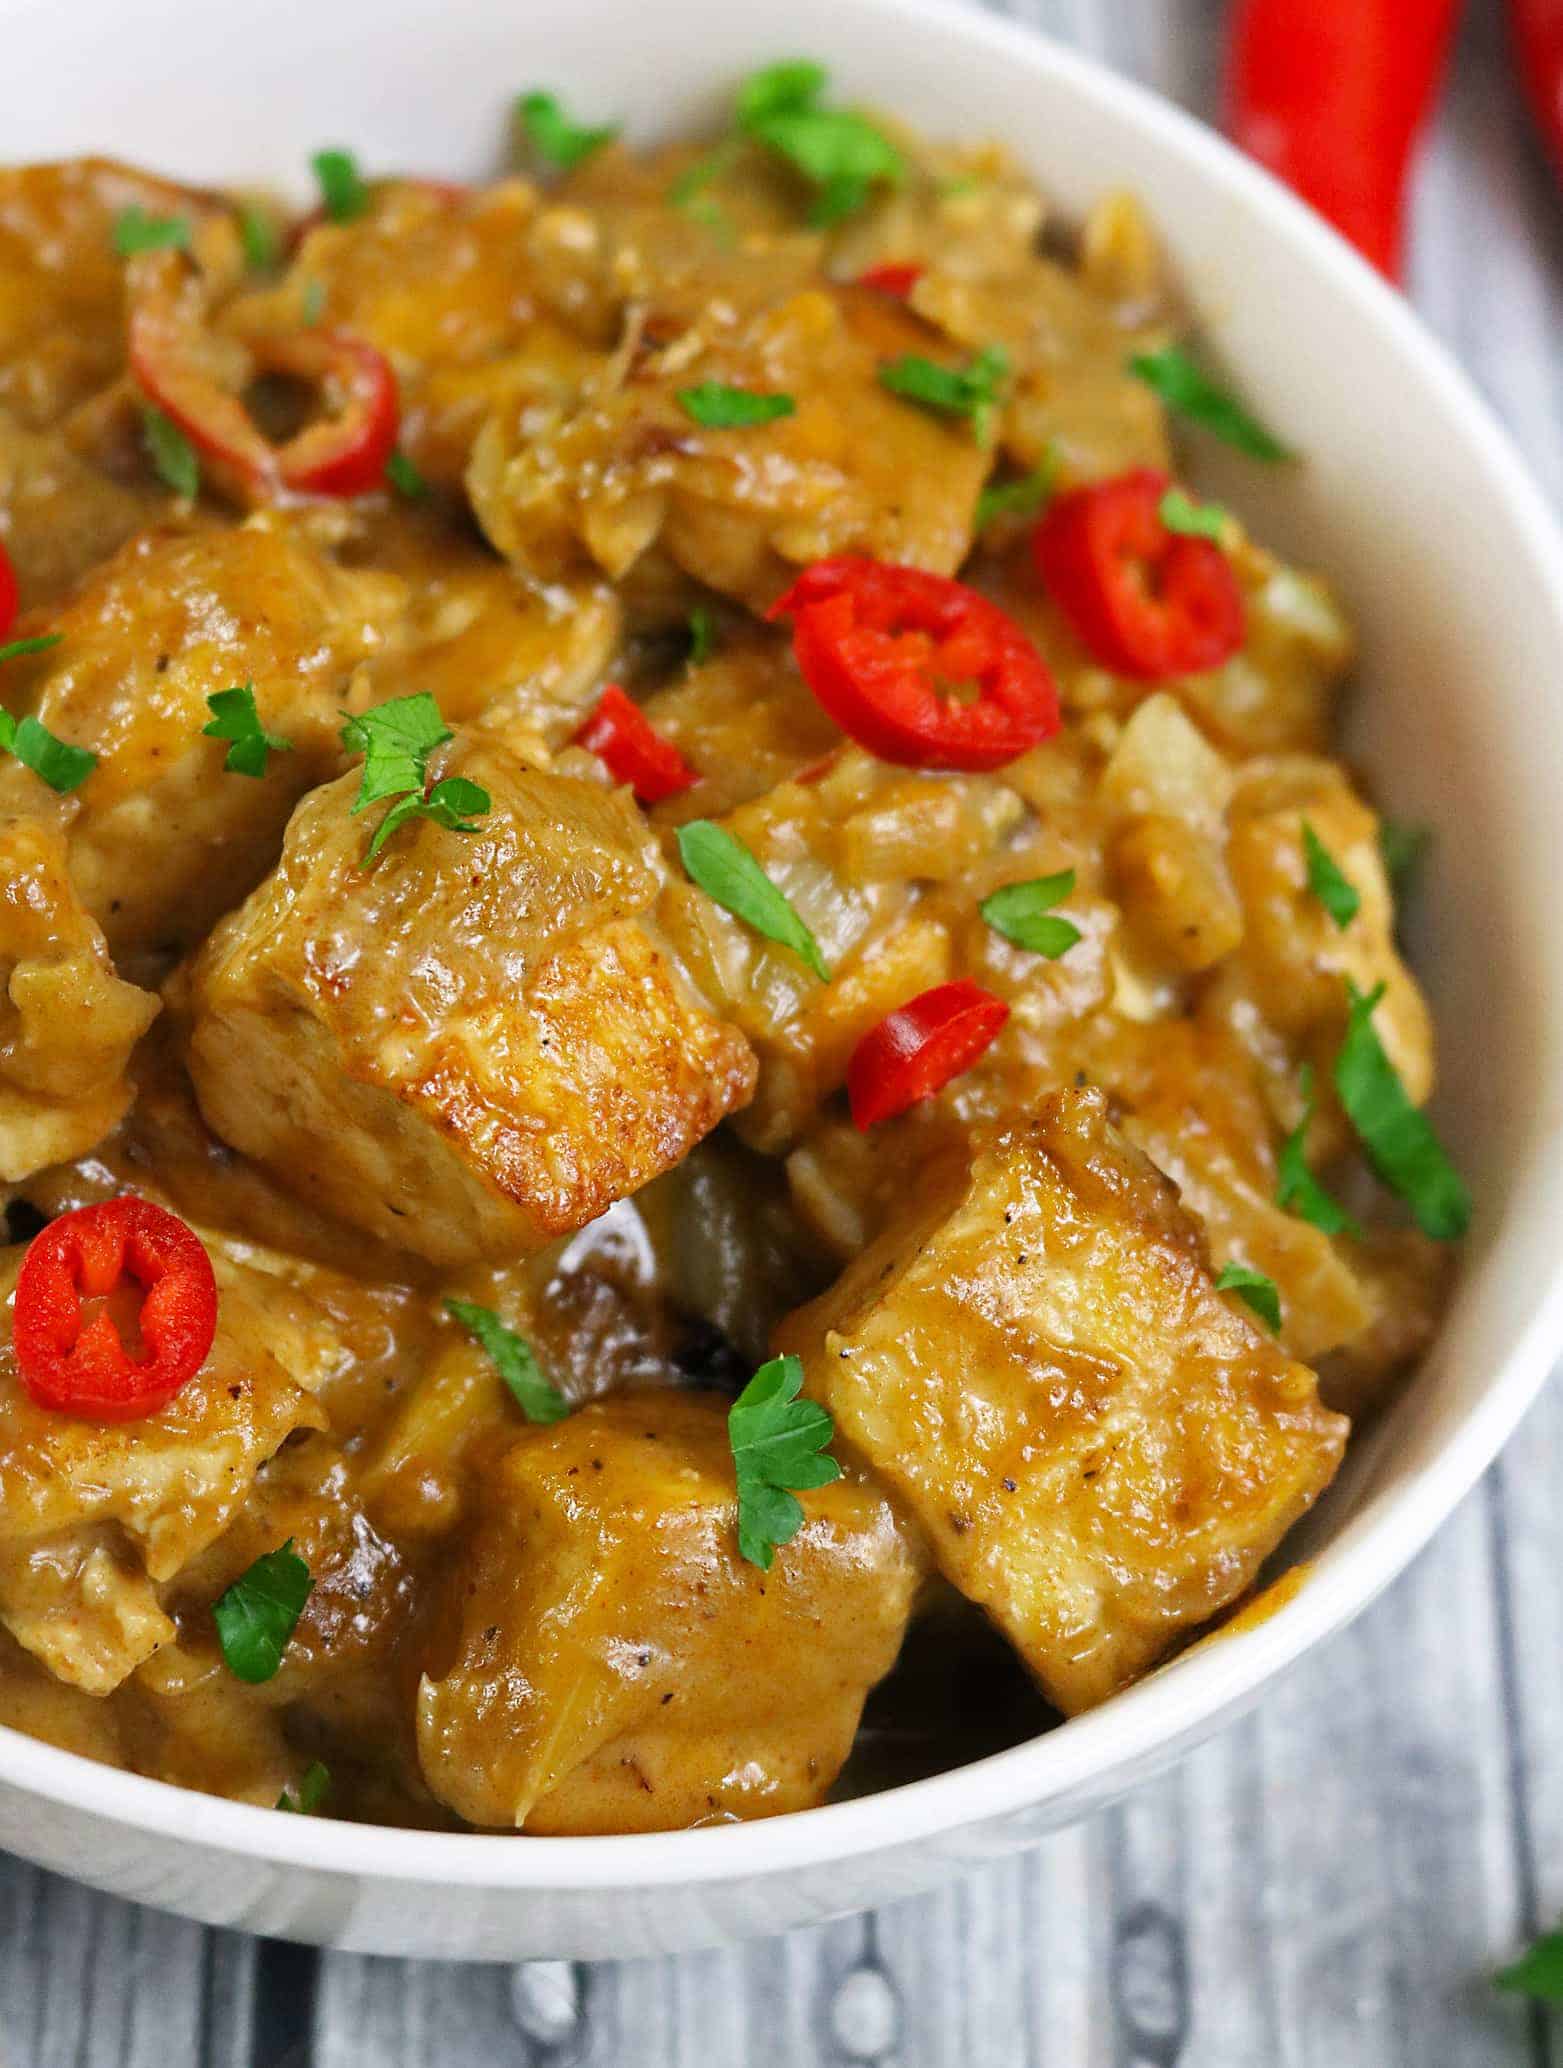 Vegetarian Date Tamarind Tofu Curry